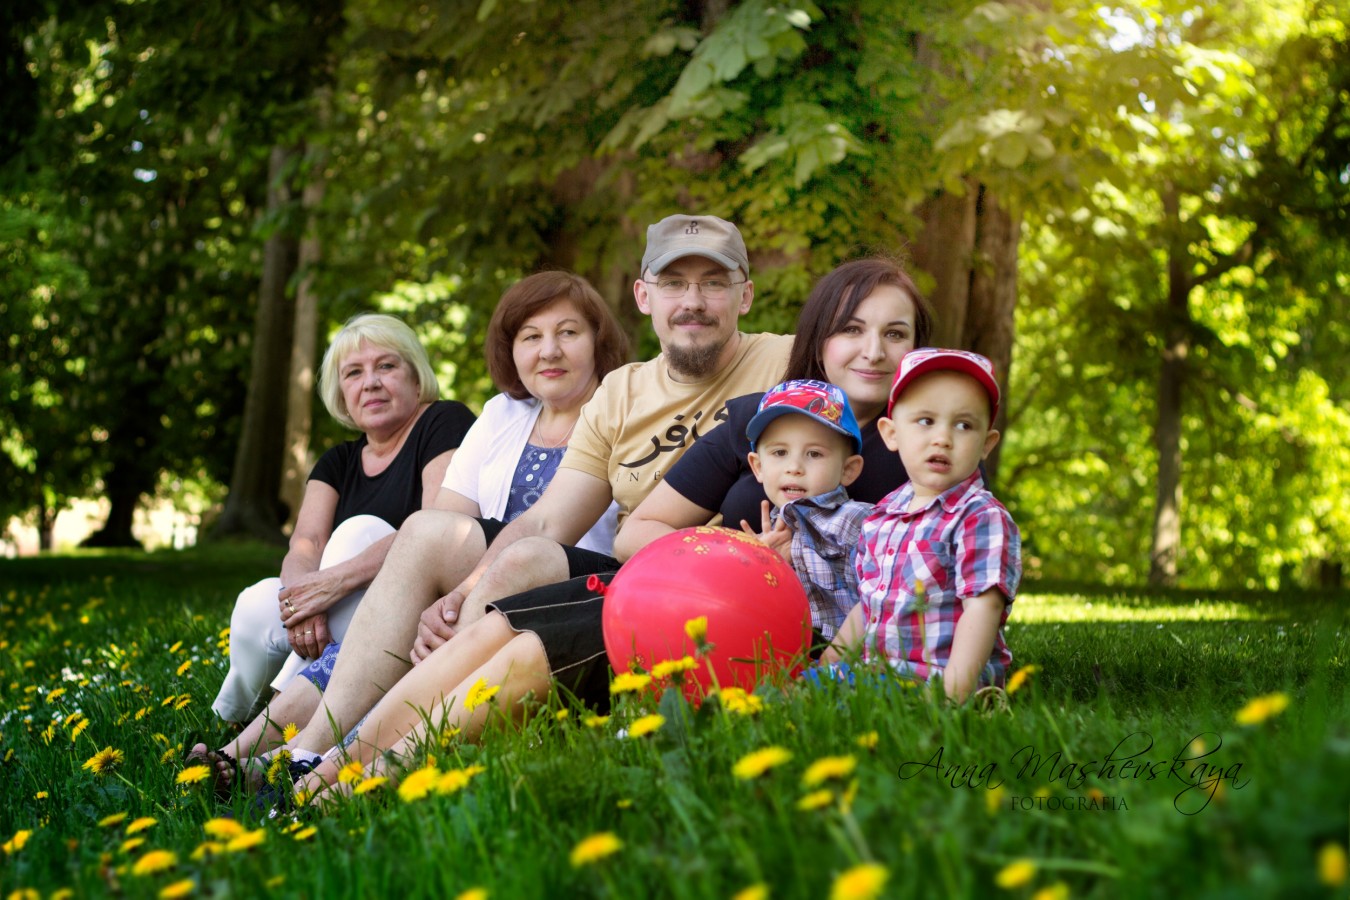 zdjęcia gdansk fotograf anna-mashevskaya portfolio zdjecia rodzinne fotografia rodzinna sesja